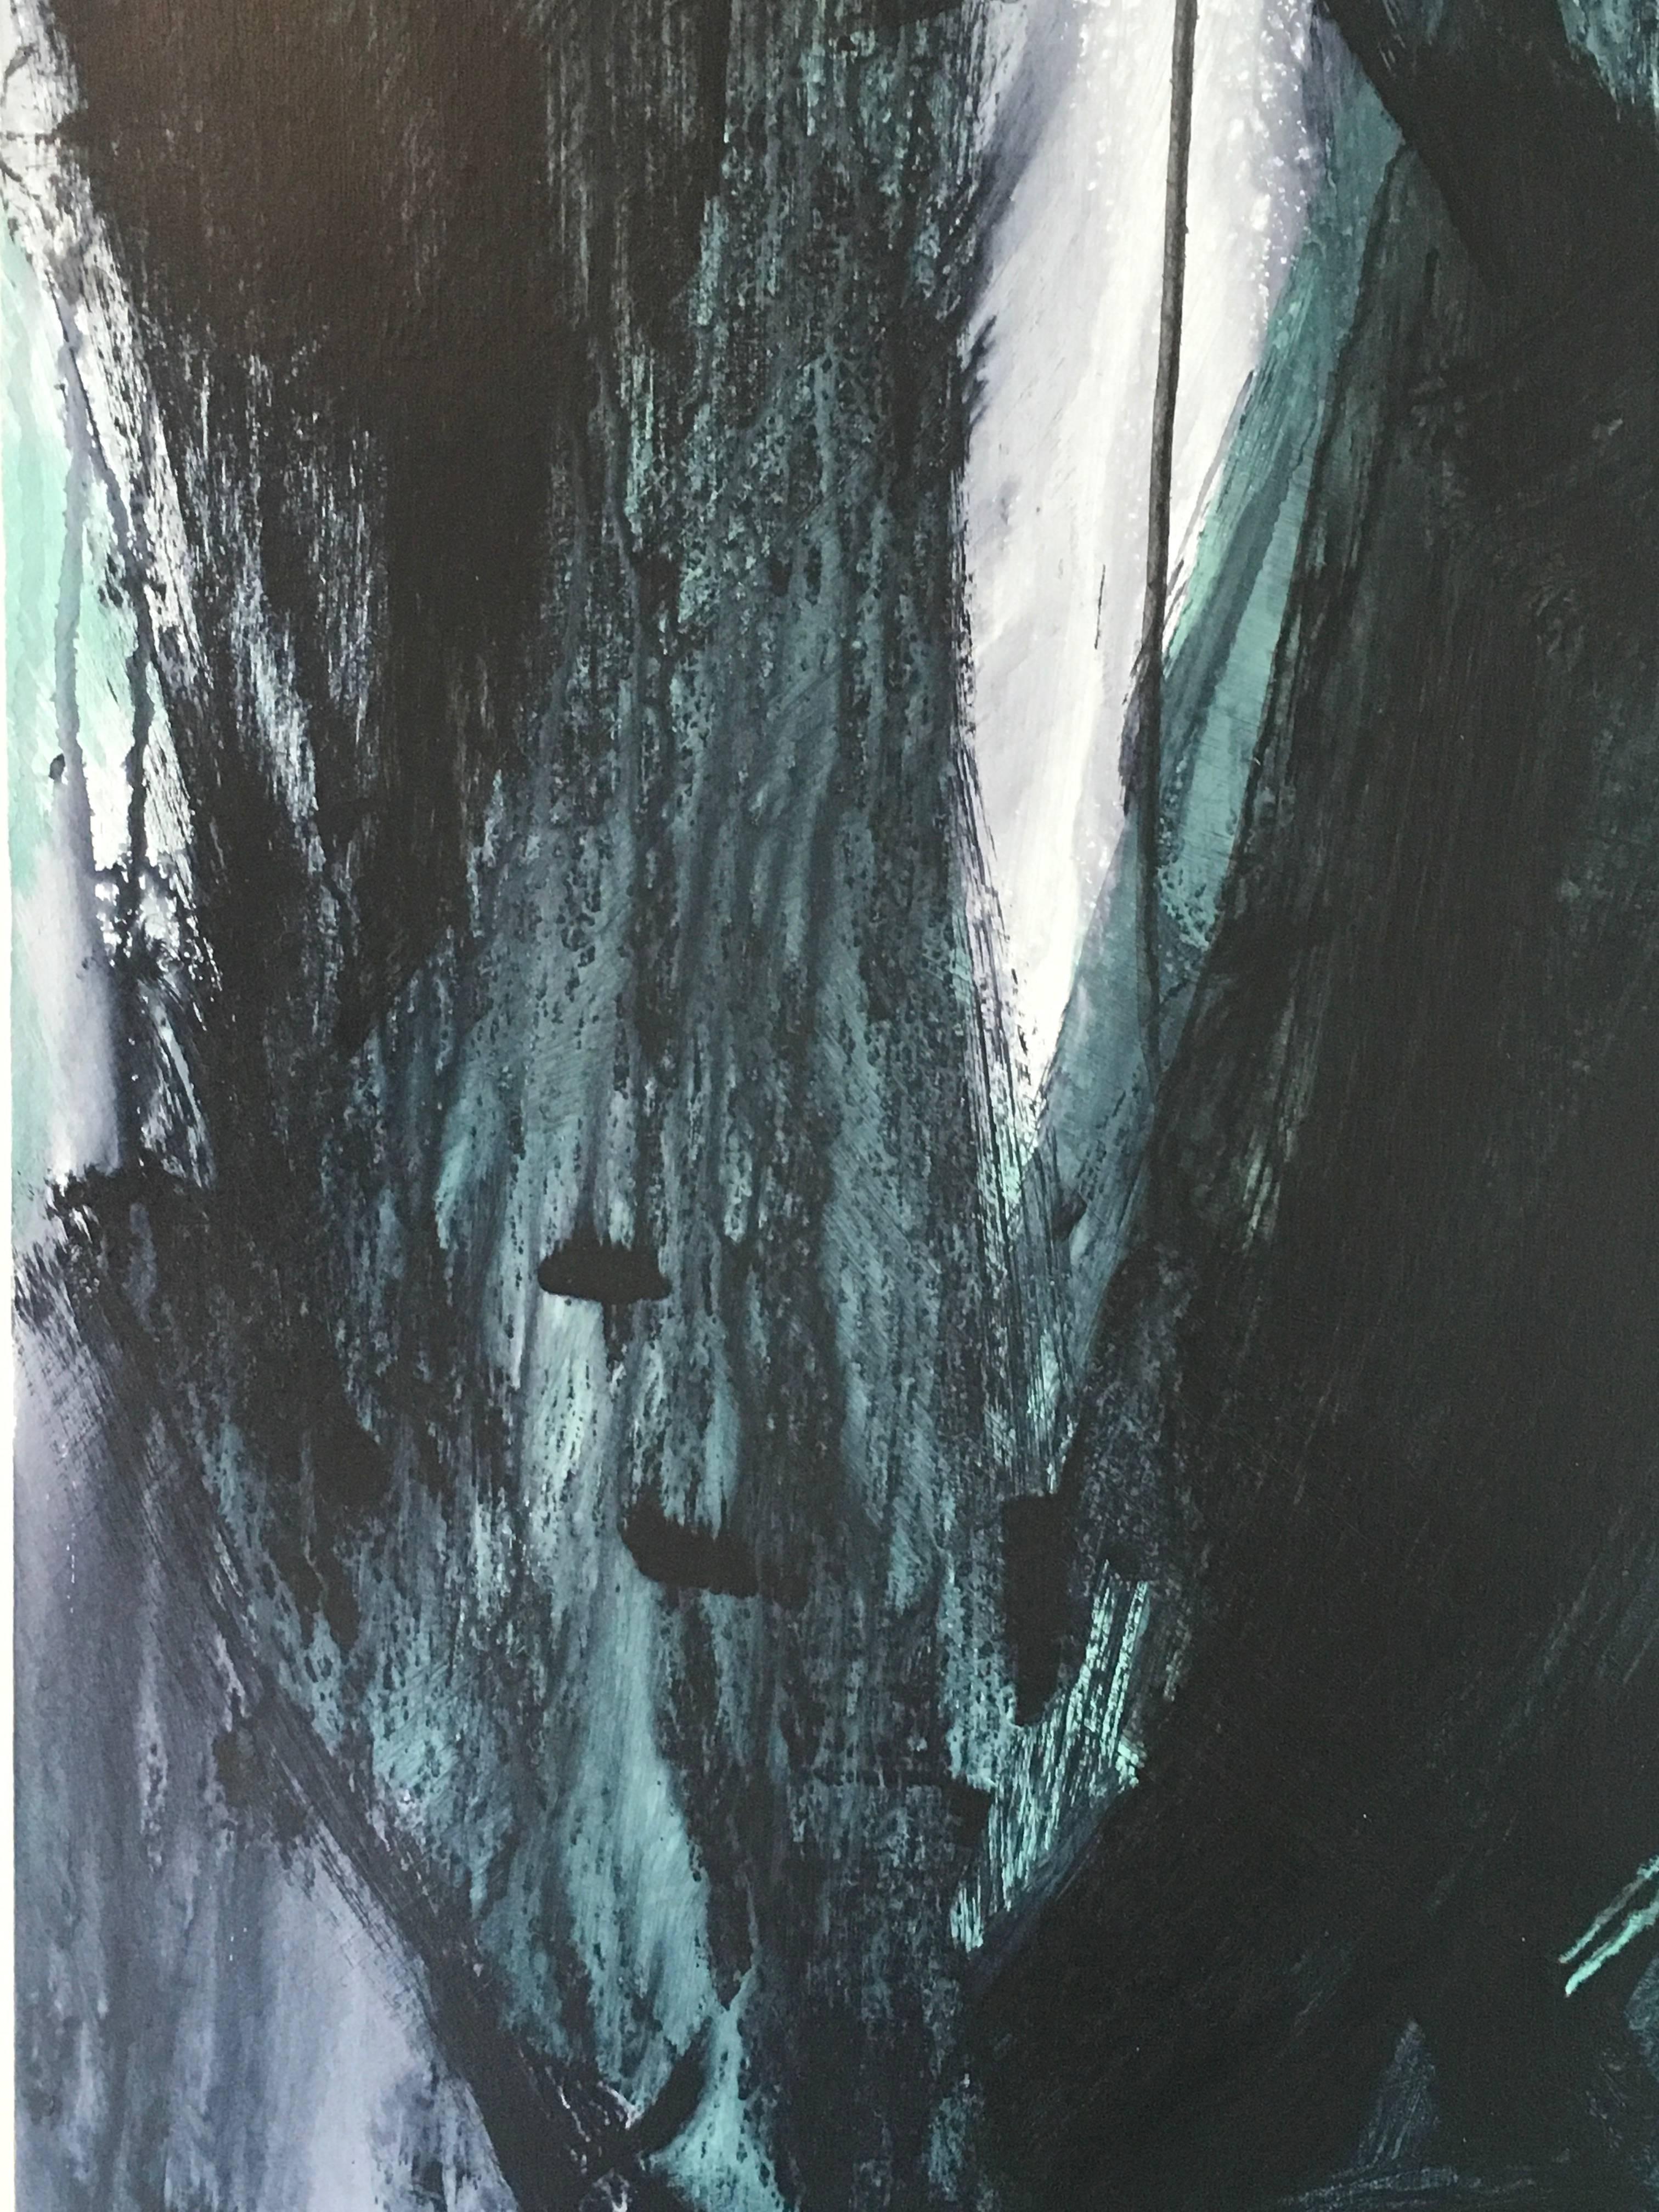 Europa 22 de l'artiste de Los Angeles Stephanie Cate est une peinture acrylique sur panneau de bois.  Il est de 48x36.  L'abstraction en noir, blanc et vert explore la lune Europe, une planète avec du feu, de la glace et un potentiel pour la vie. 